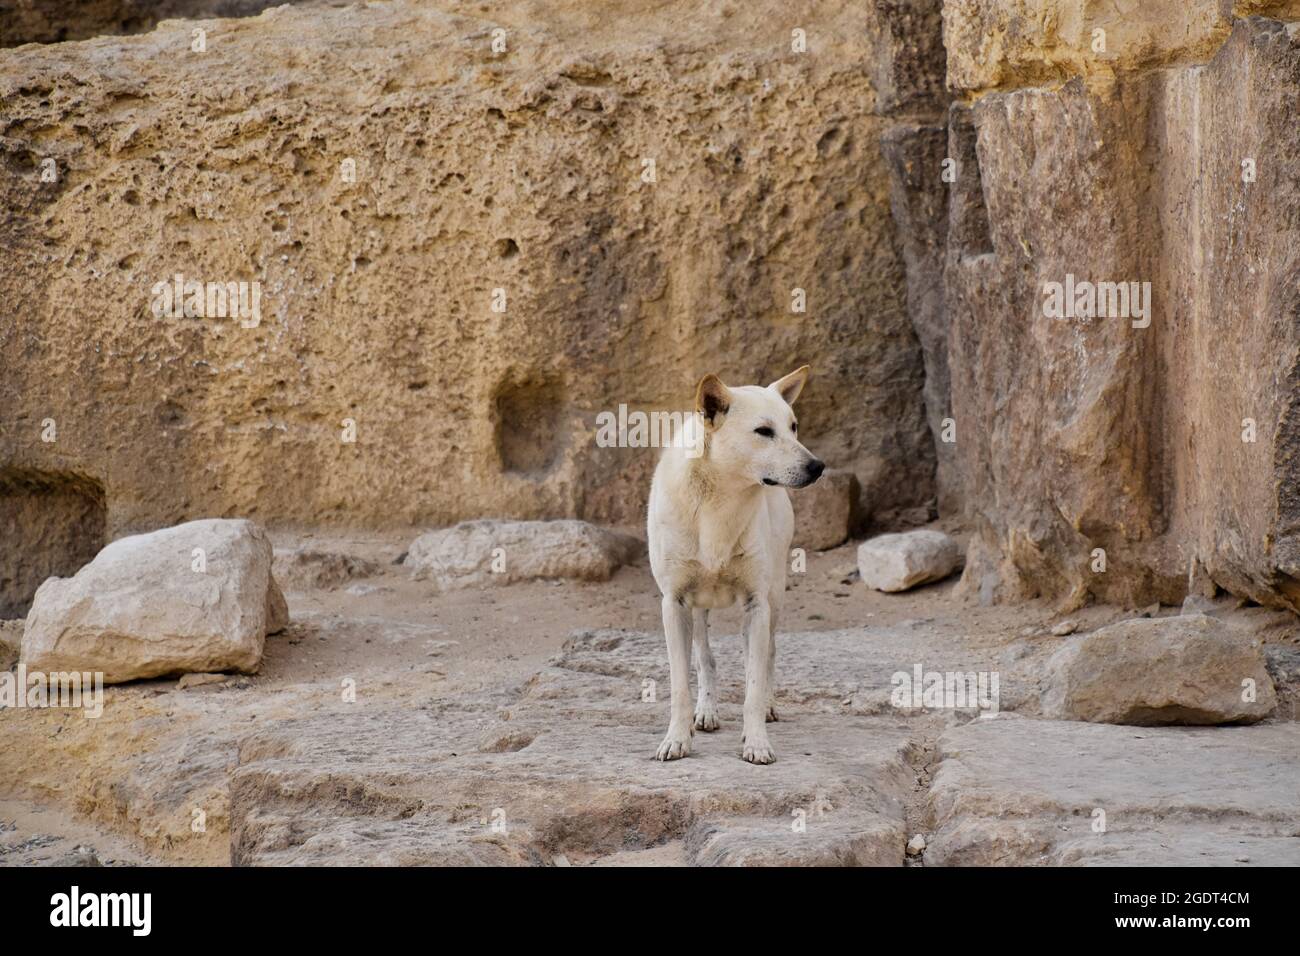 A stray dog at the Giza pyramids, Cairo, Egypt Stock Photo